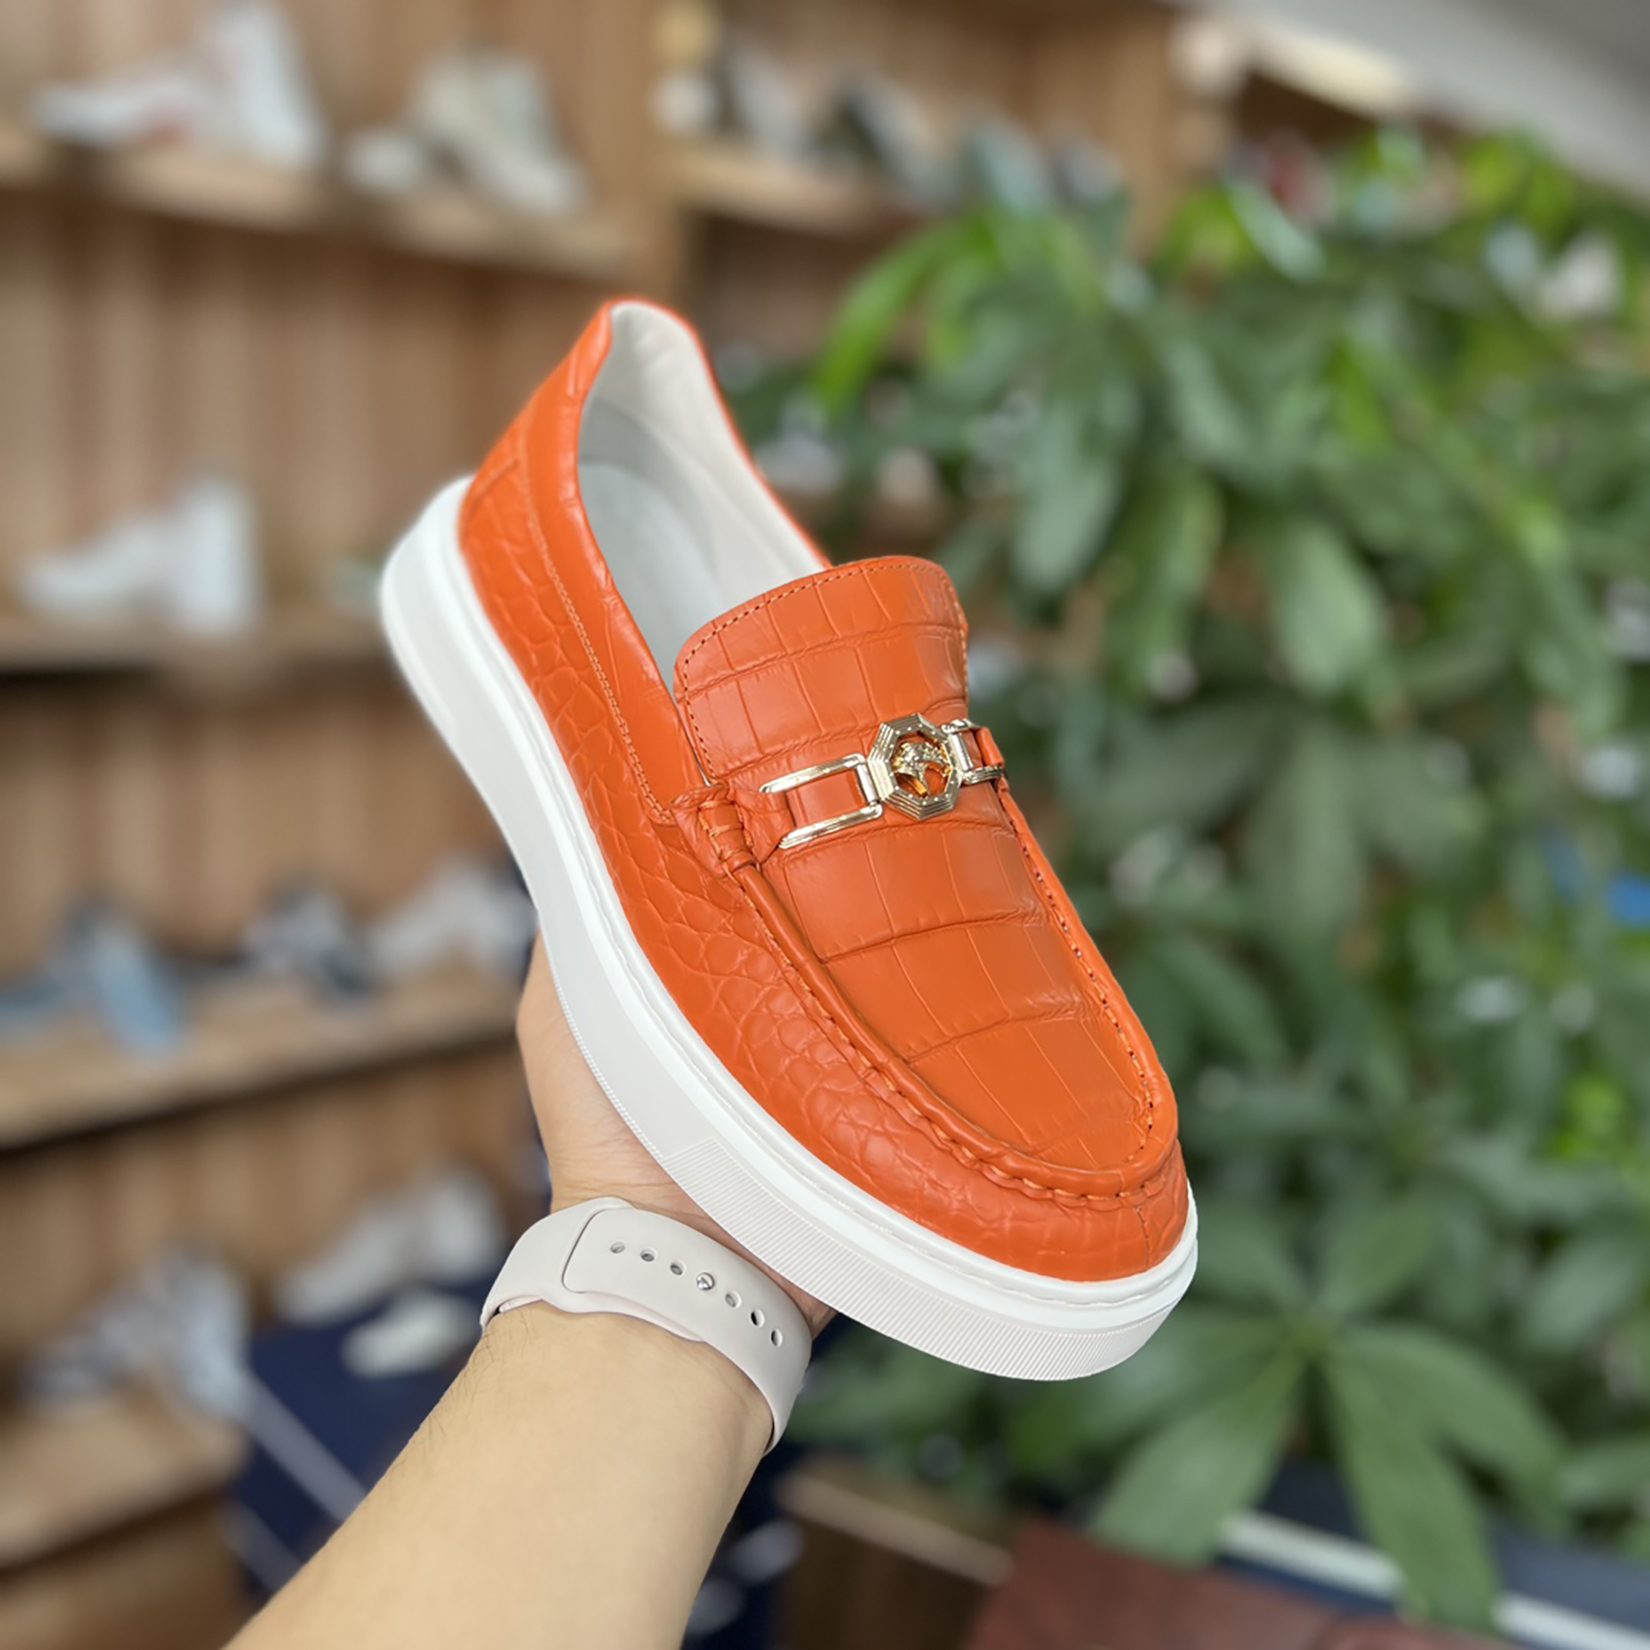 Men's Genuine Crocodile Leather Slip On Loafer Bit Shoes Orange